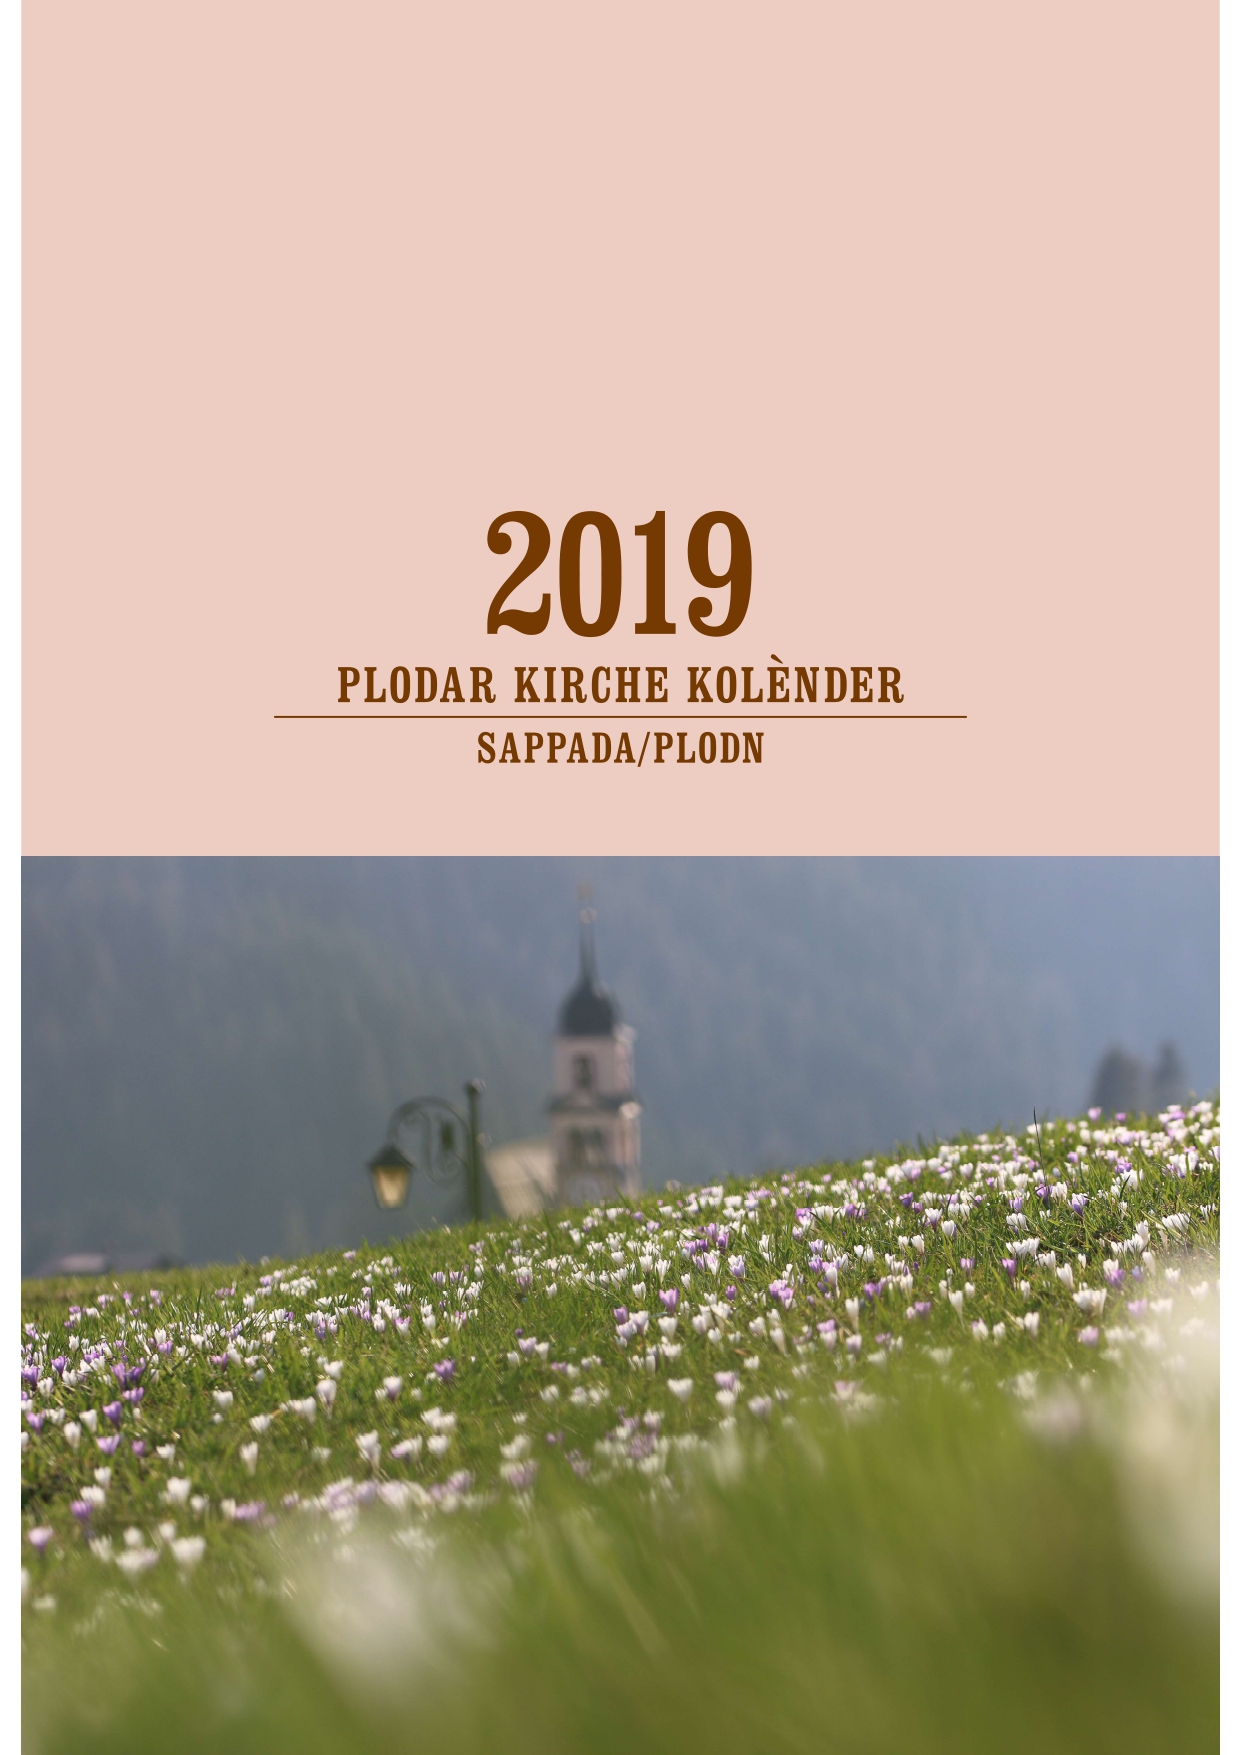 Plodar-kirche-kolender-2019